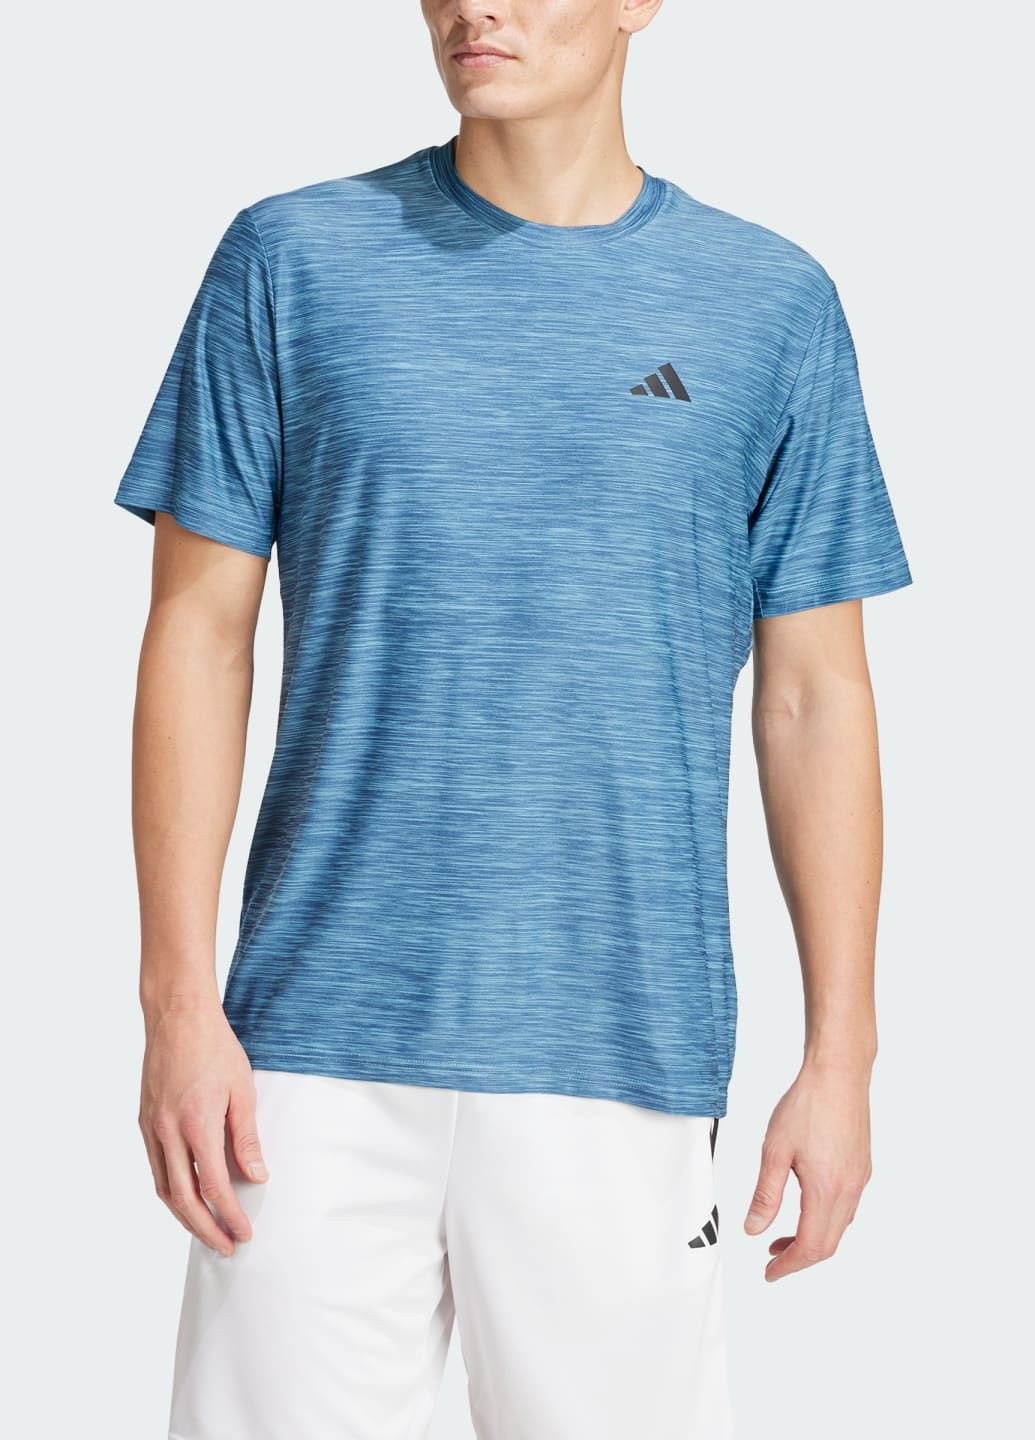 Синя футболка train essentials stretch training adidas